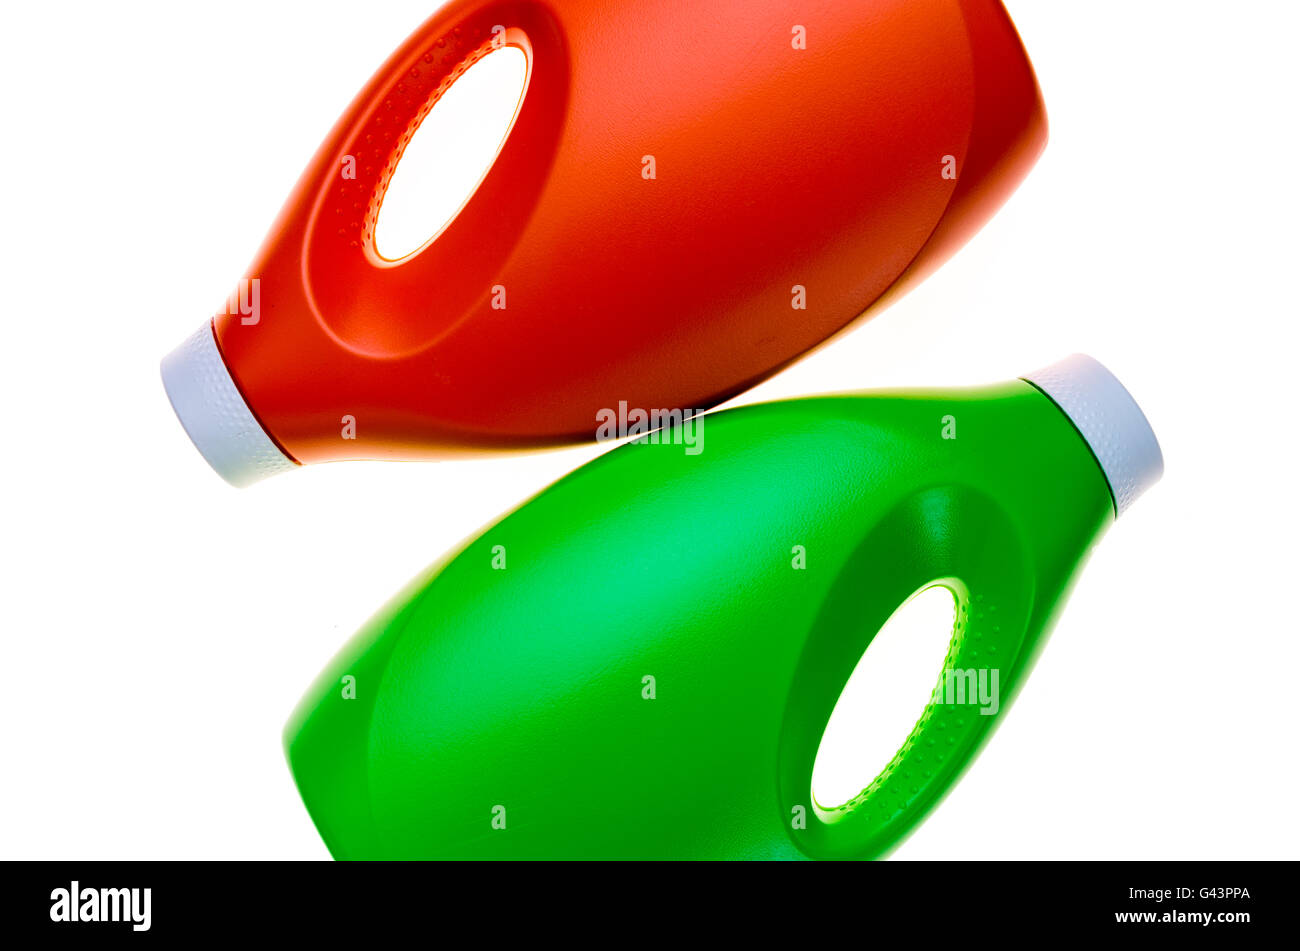 Résumé fond colorés réalisés avec des bouteilles en plastique de détergent liquide Banque D'Images